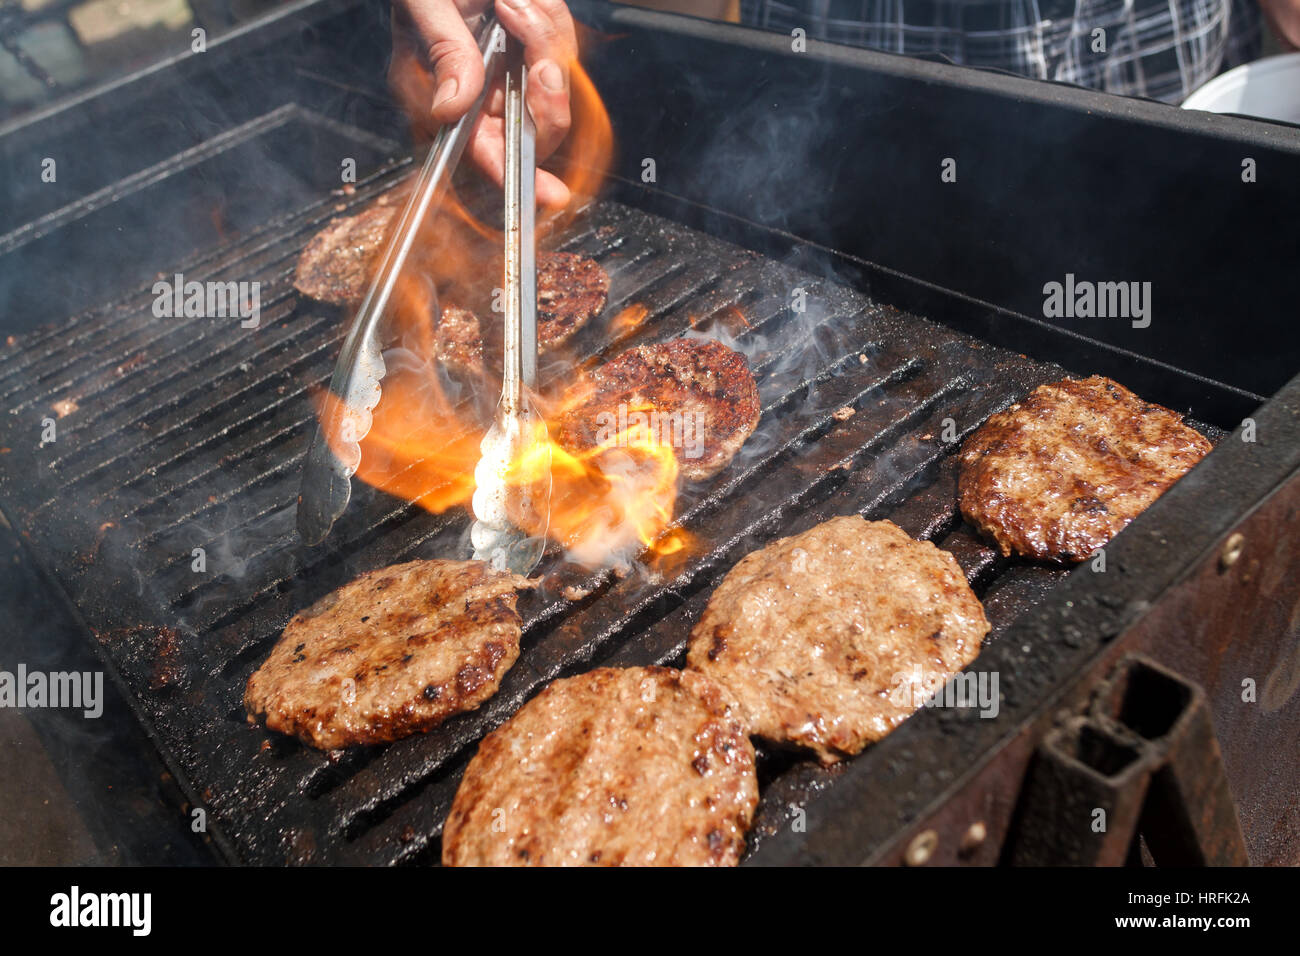 La viande de porc ou de boeuf cuit sur le feu, d'un barbecue pour les hamburgers Banque D'Images